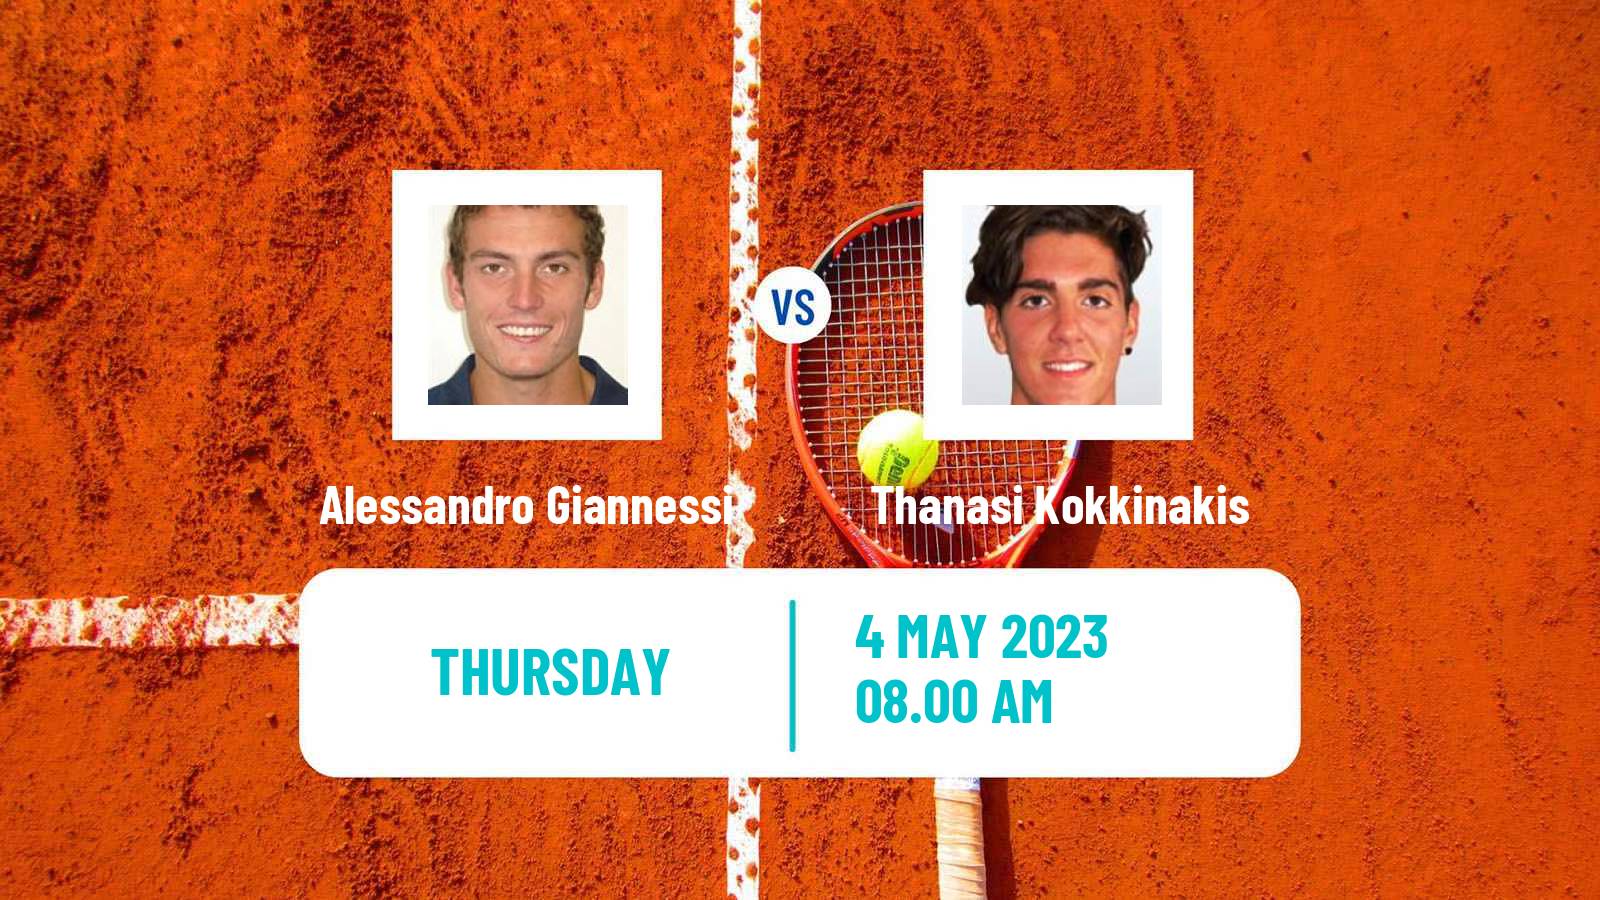 Tennis ATP Challenger Alessandro Giannessi - Thanasi Kokkinakis